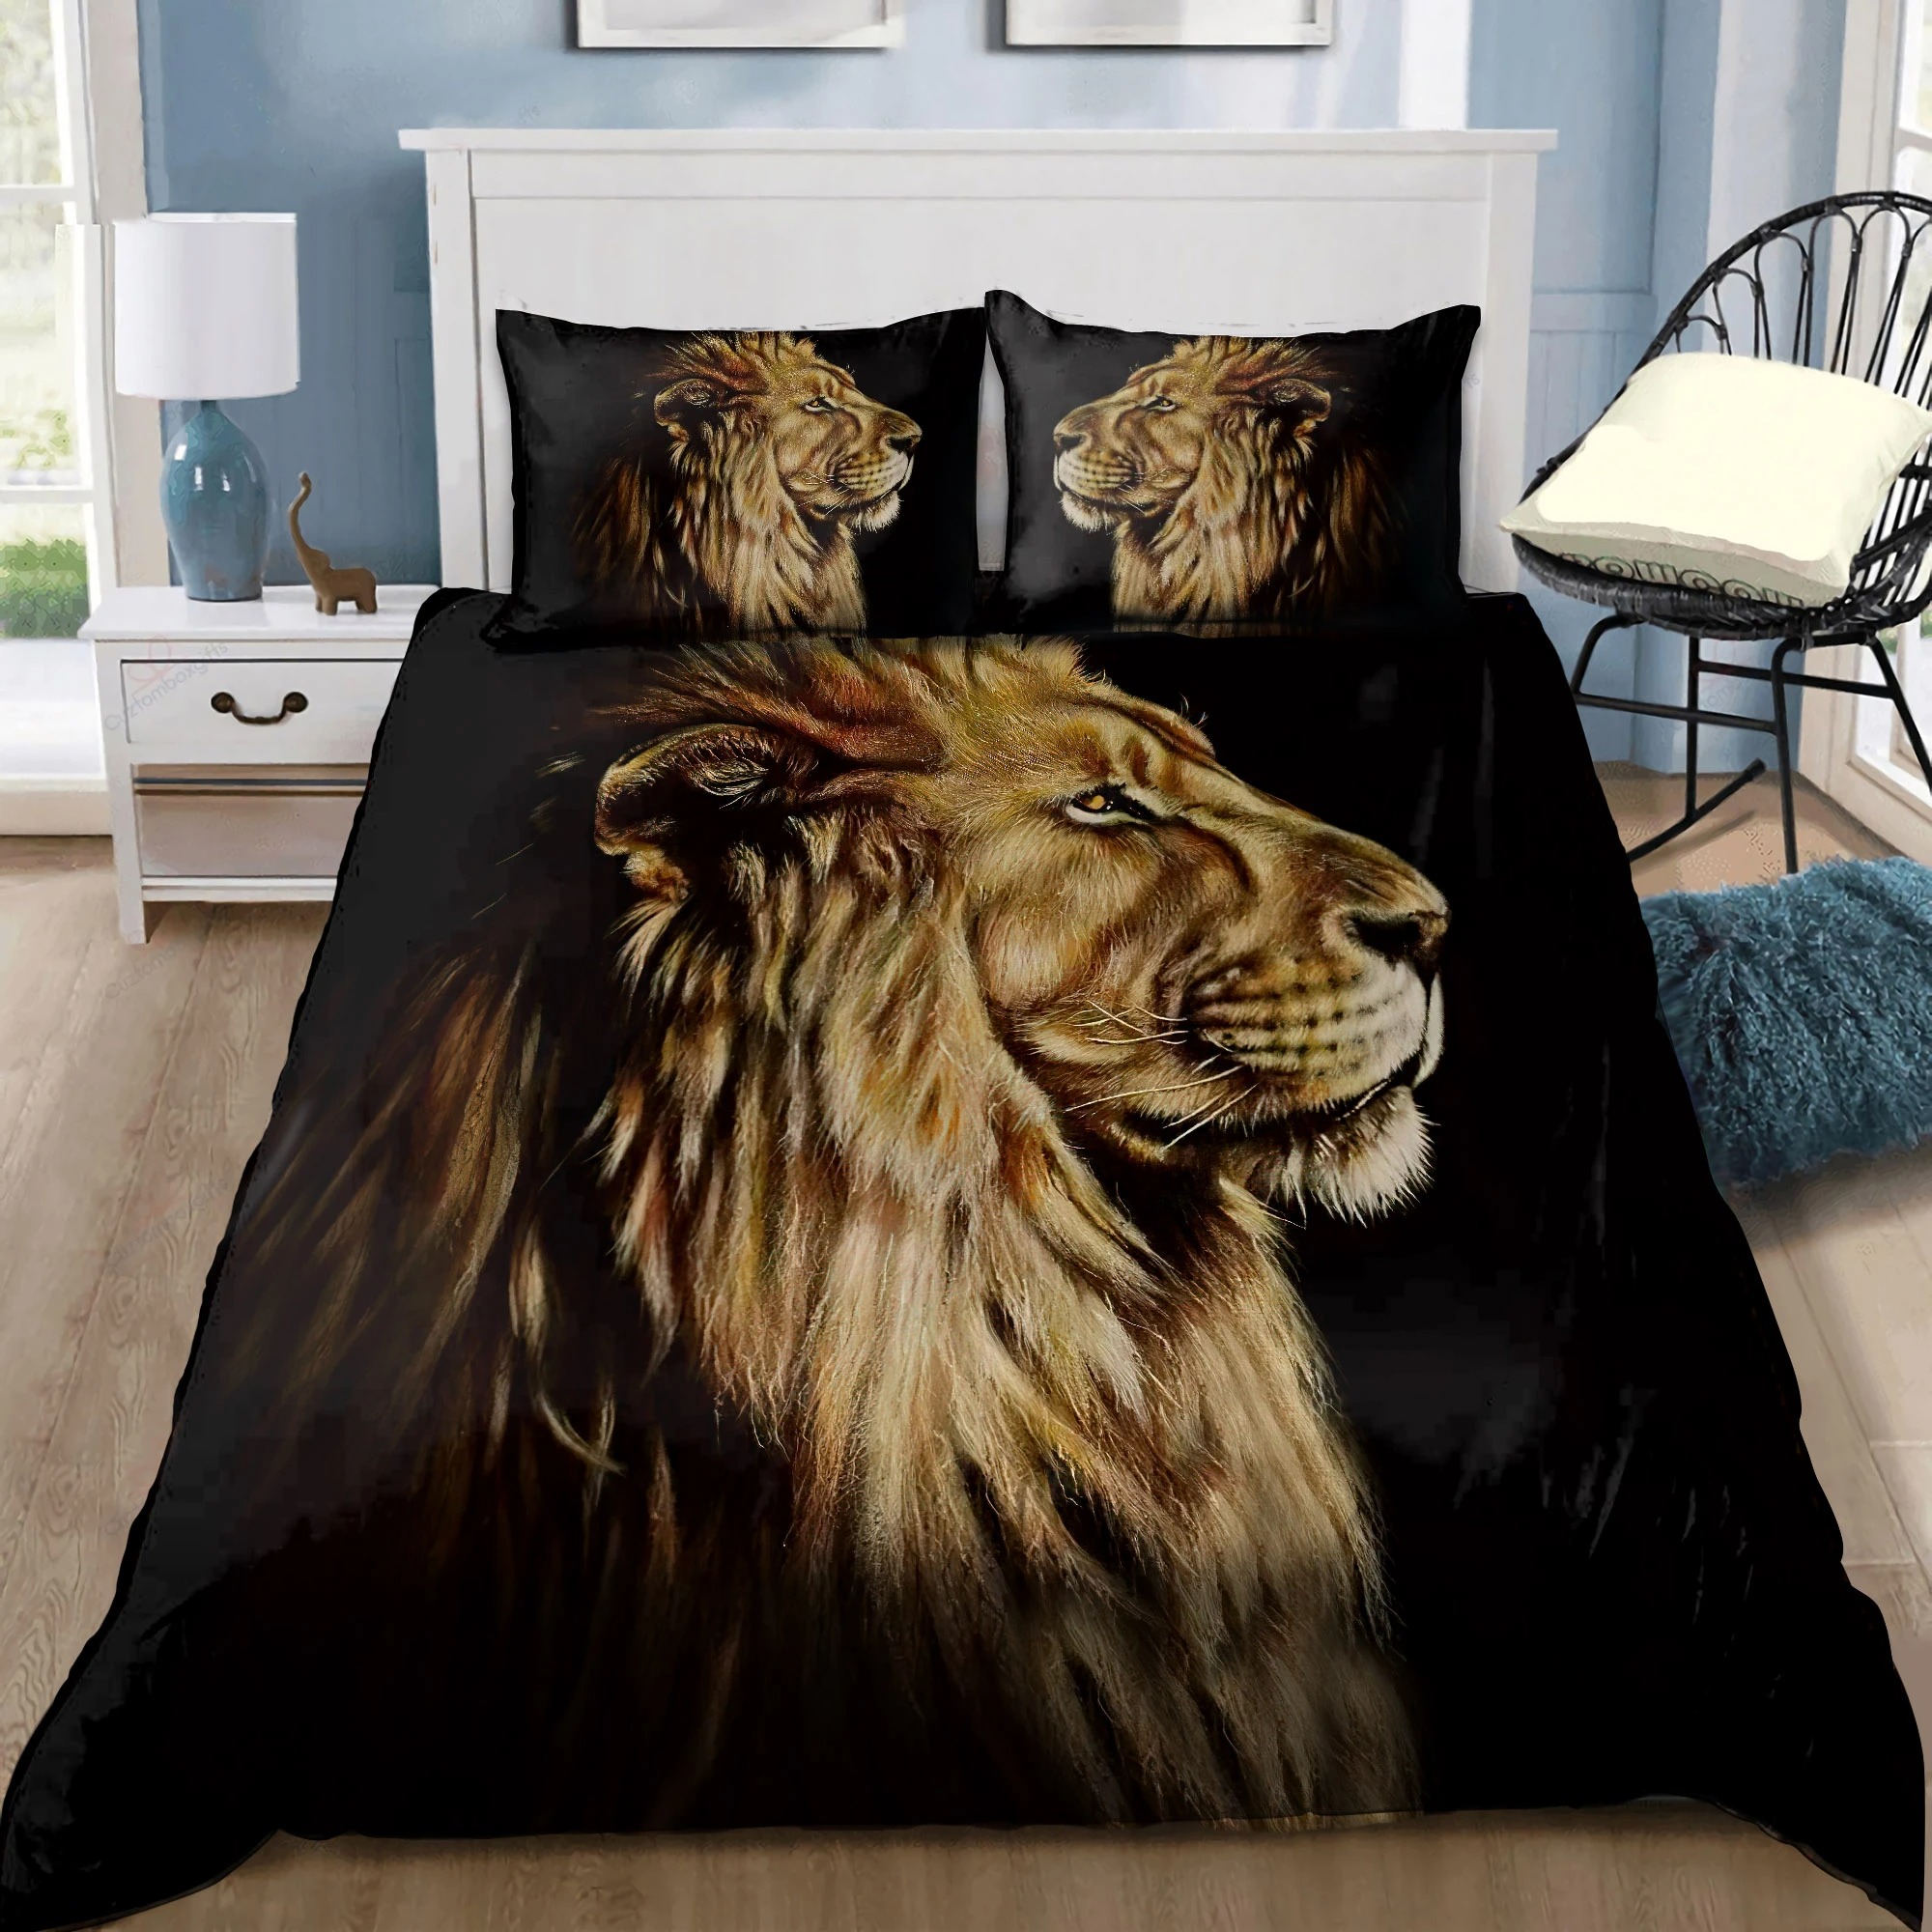 Lion king bedding set